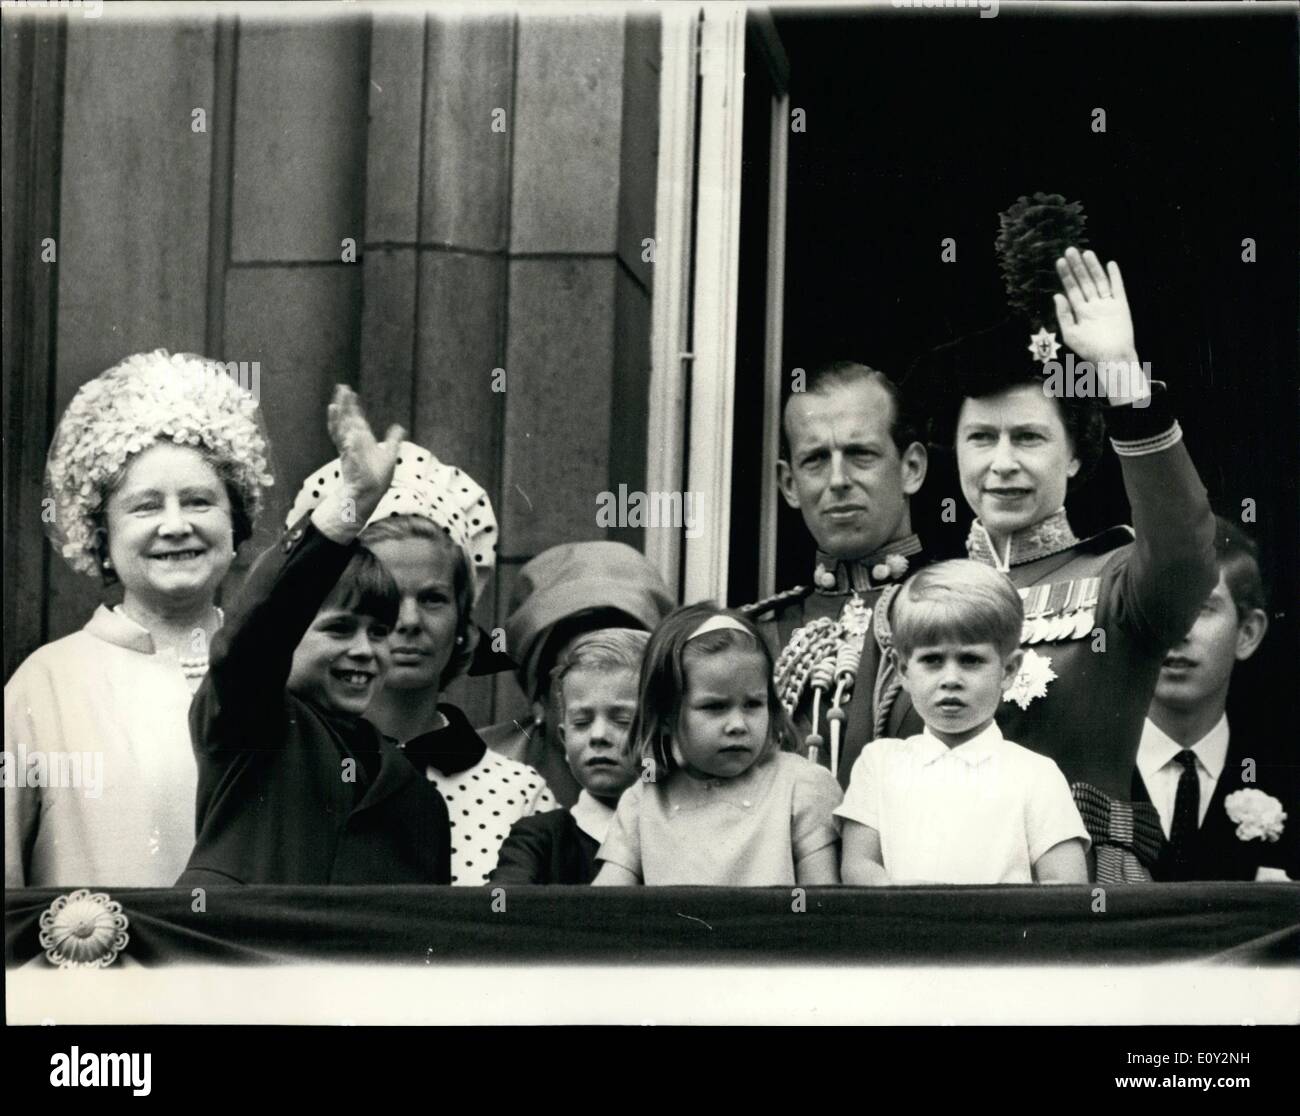 Giugno 06, 1968 - H.M. La regina e i membri della Famiglia Reale sul balcone: H.M. La regina con altri membri della famiglia reale è apparso sul balcone di Buckingham Palace a onda per la folla dopo la cerimonia Trooping per celebrare il compleanno ufficiale della Regina. Il fly passato ha dovuto essere annullata a causa del maltempo. Mostra fotografica di H.M. La regina onde dal balcone alla folla con altri membri della famiglia reale. L-R. La regina madre, il principe Andréj sventolare dietro è la Duchessa di Kent, i suoi due figli del conte di St Foto Stock